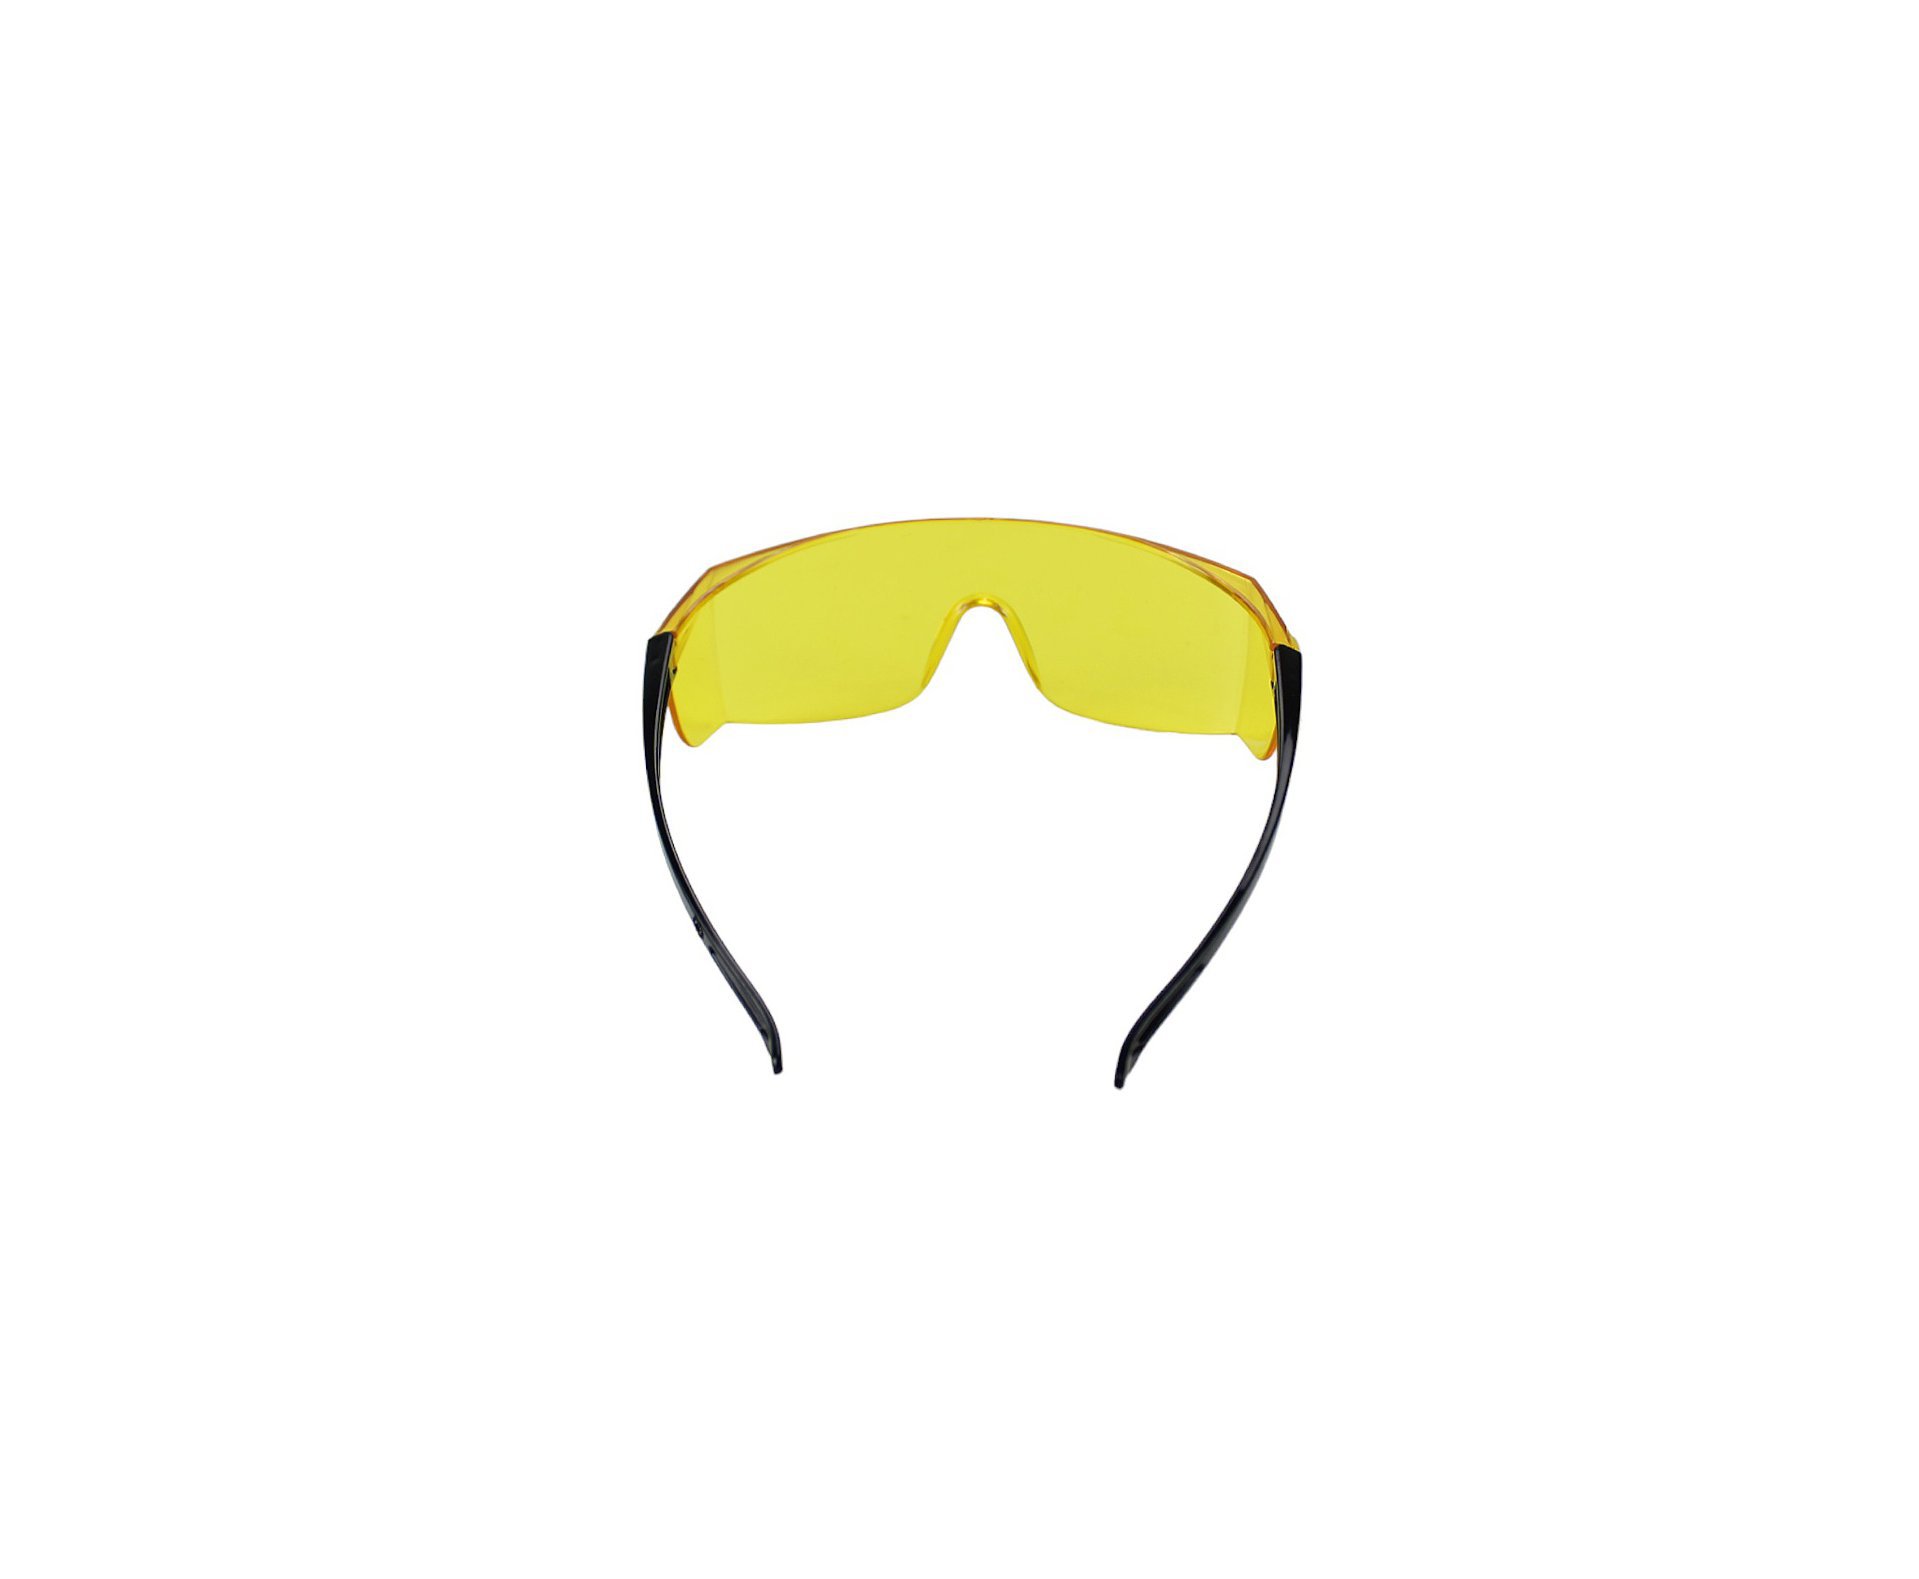 Óculos de Segurança Evolution Valeplast Amarelo Para Tiro Esportivo (62160)